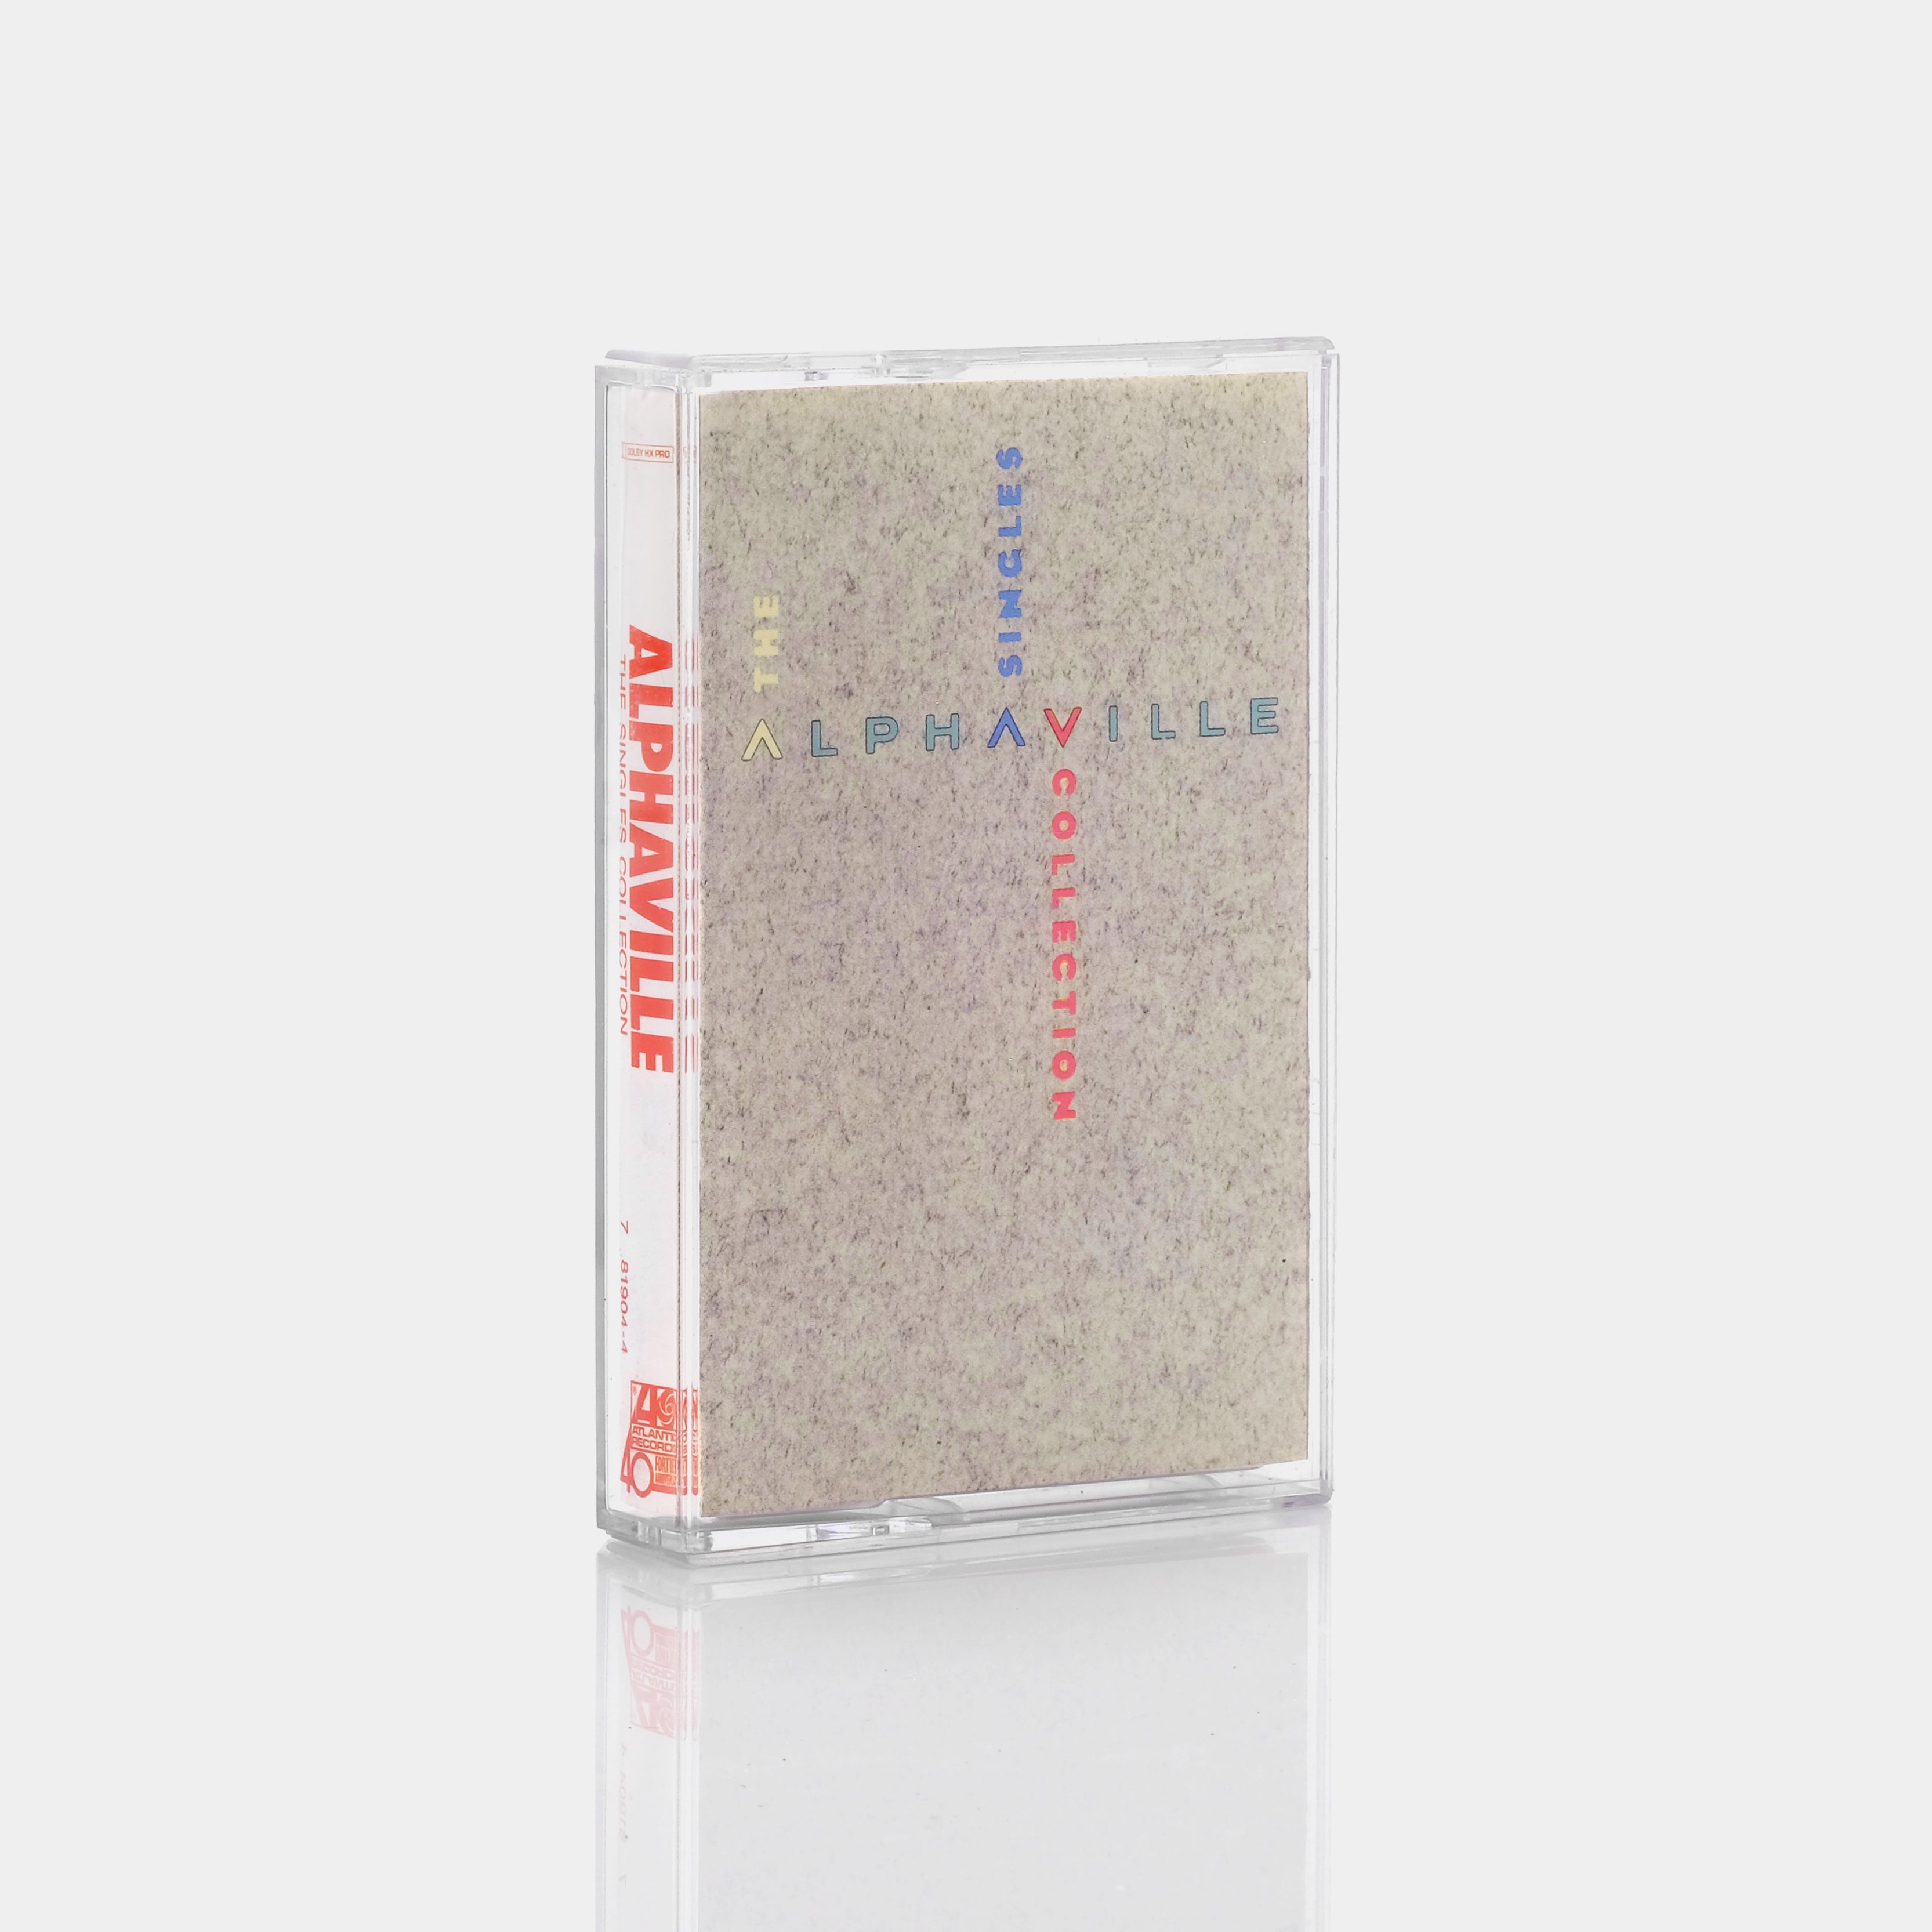 Alphaville - The Singles Collection Cassette Tape